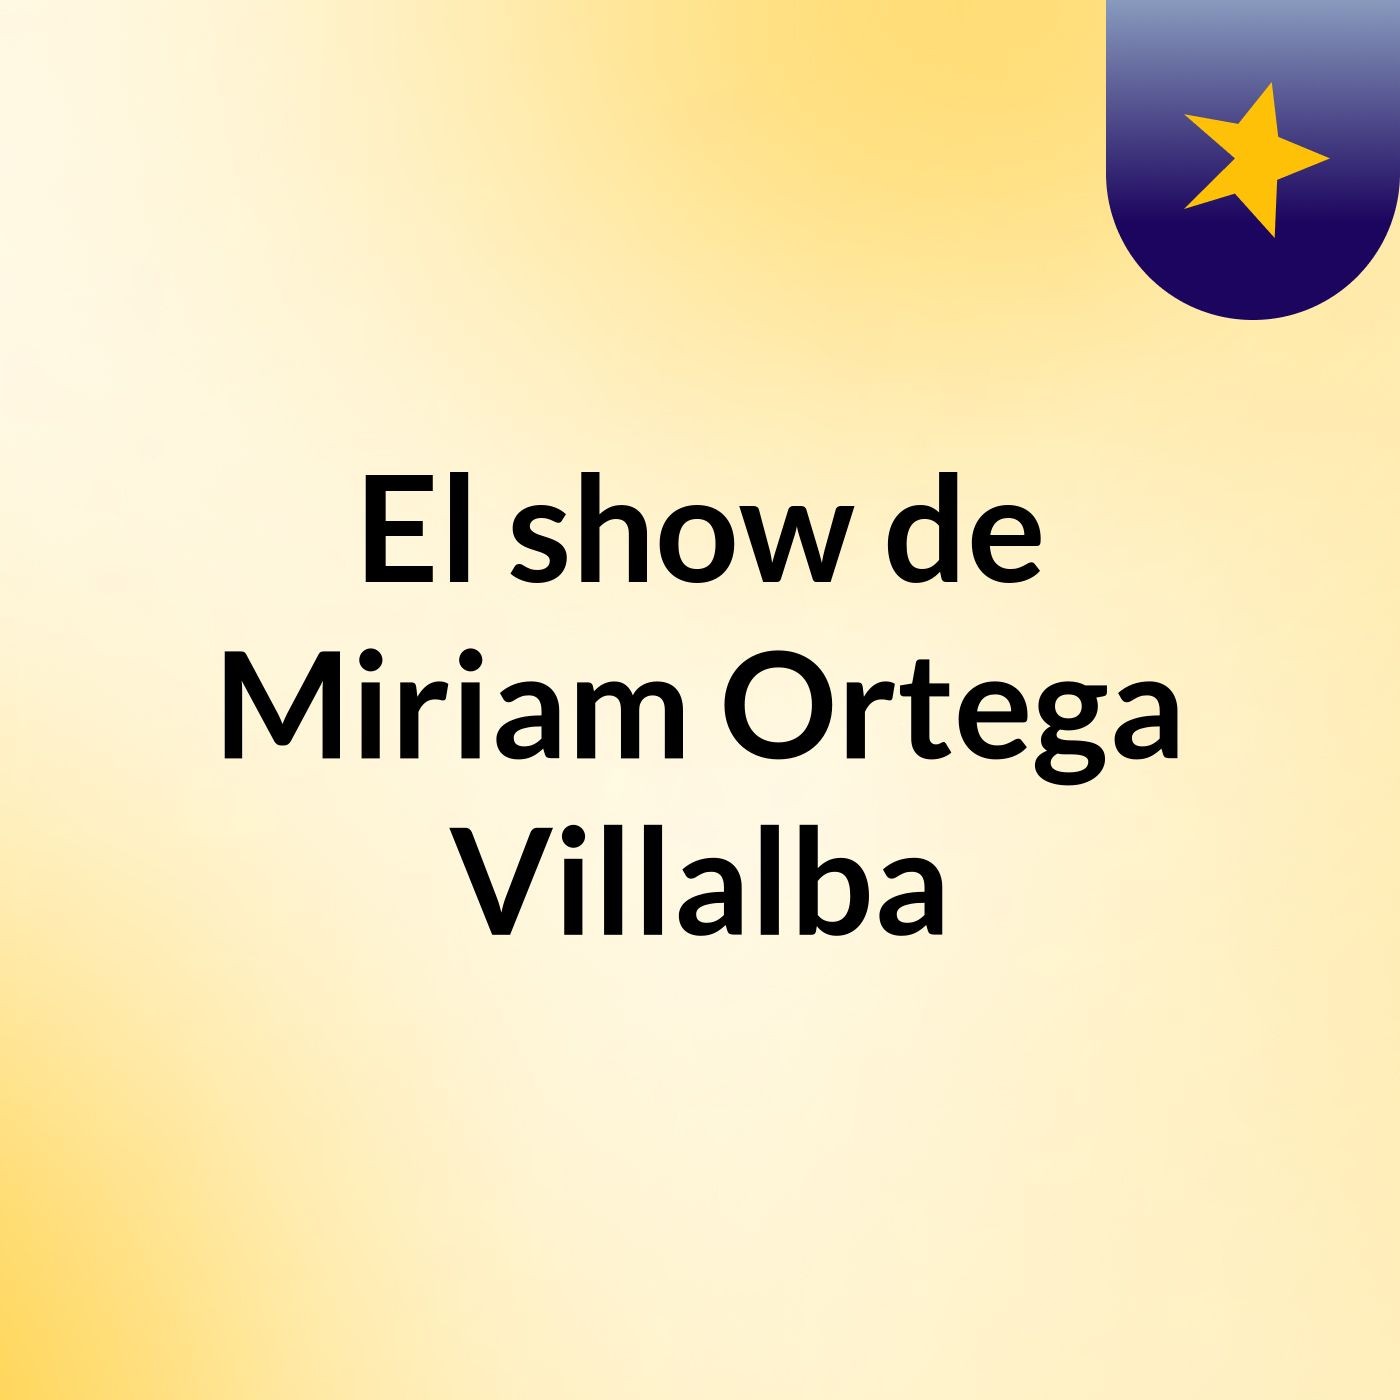 El show de Miriam Ortega Villalba